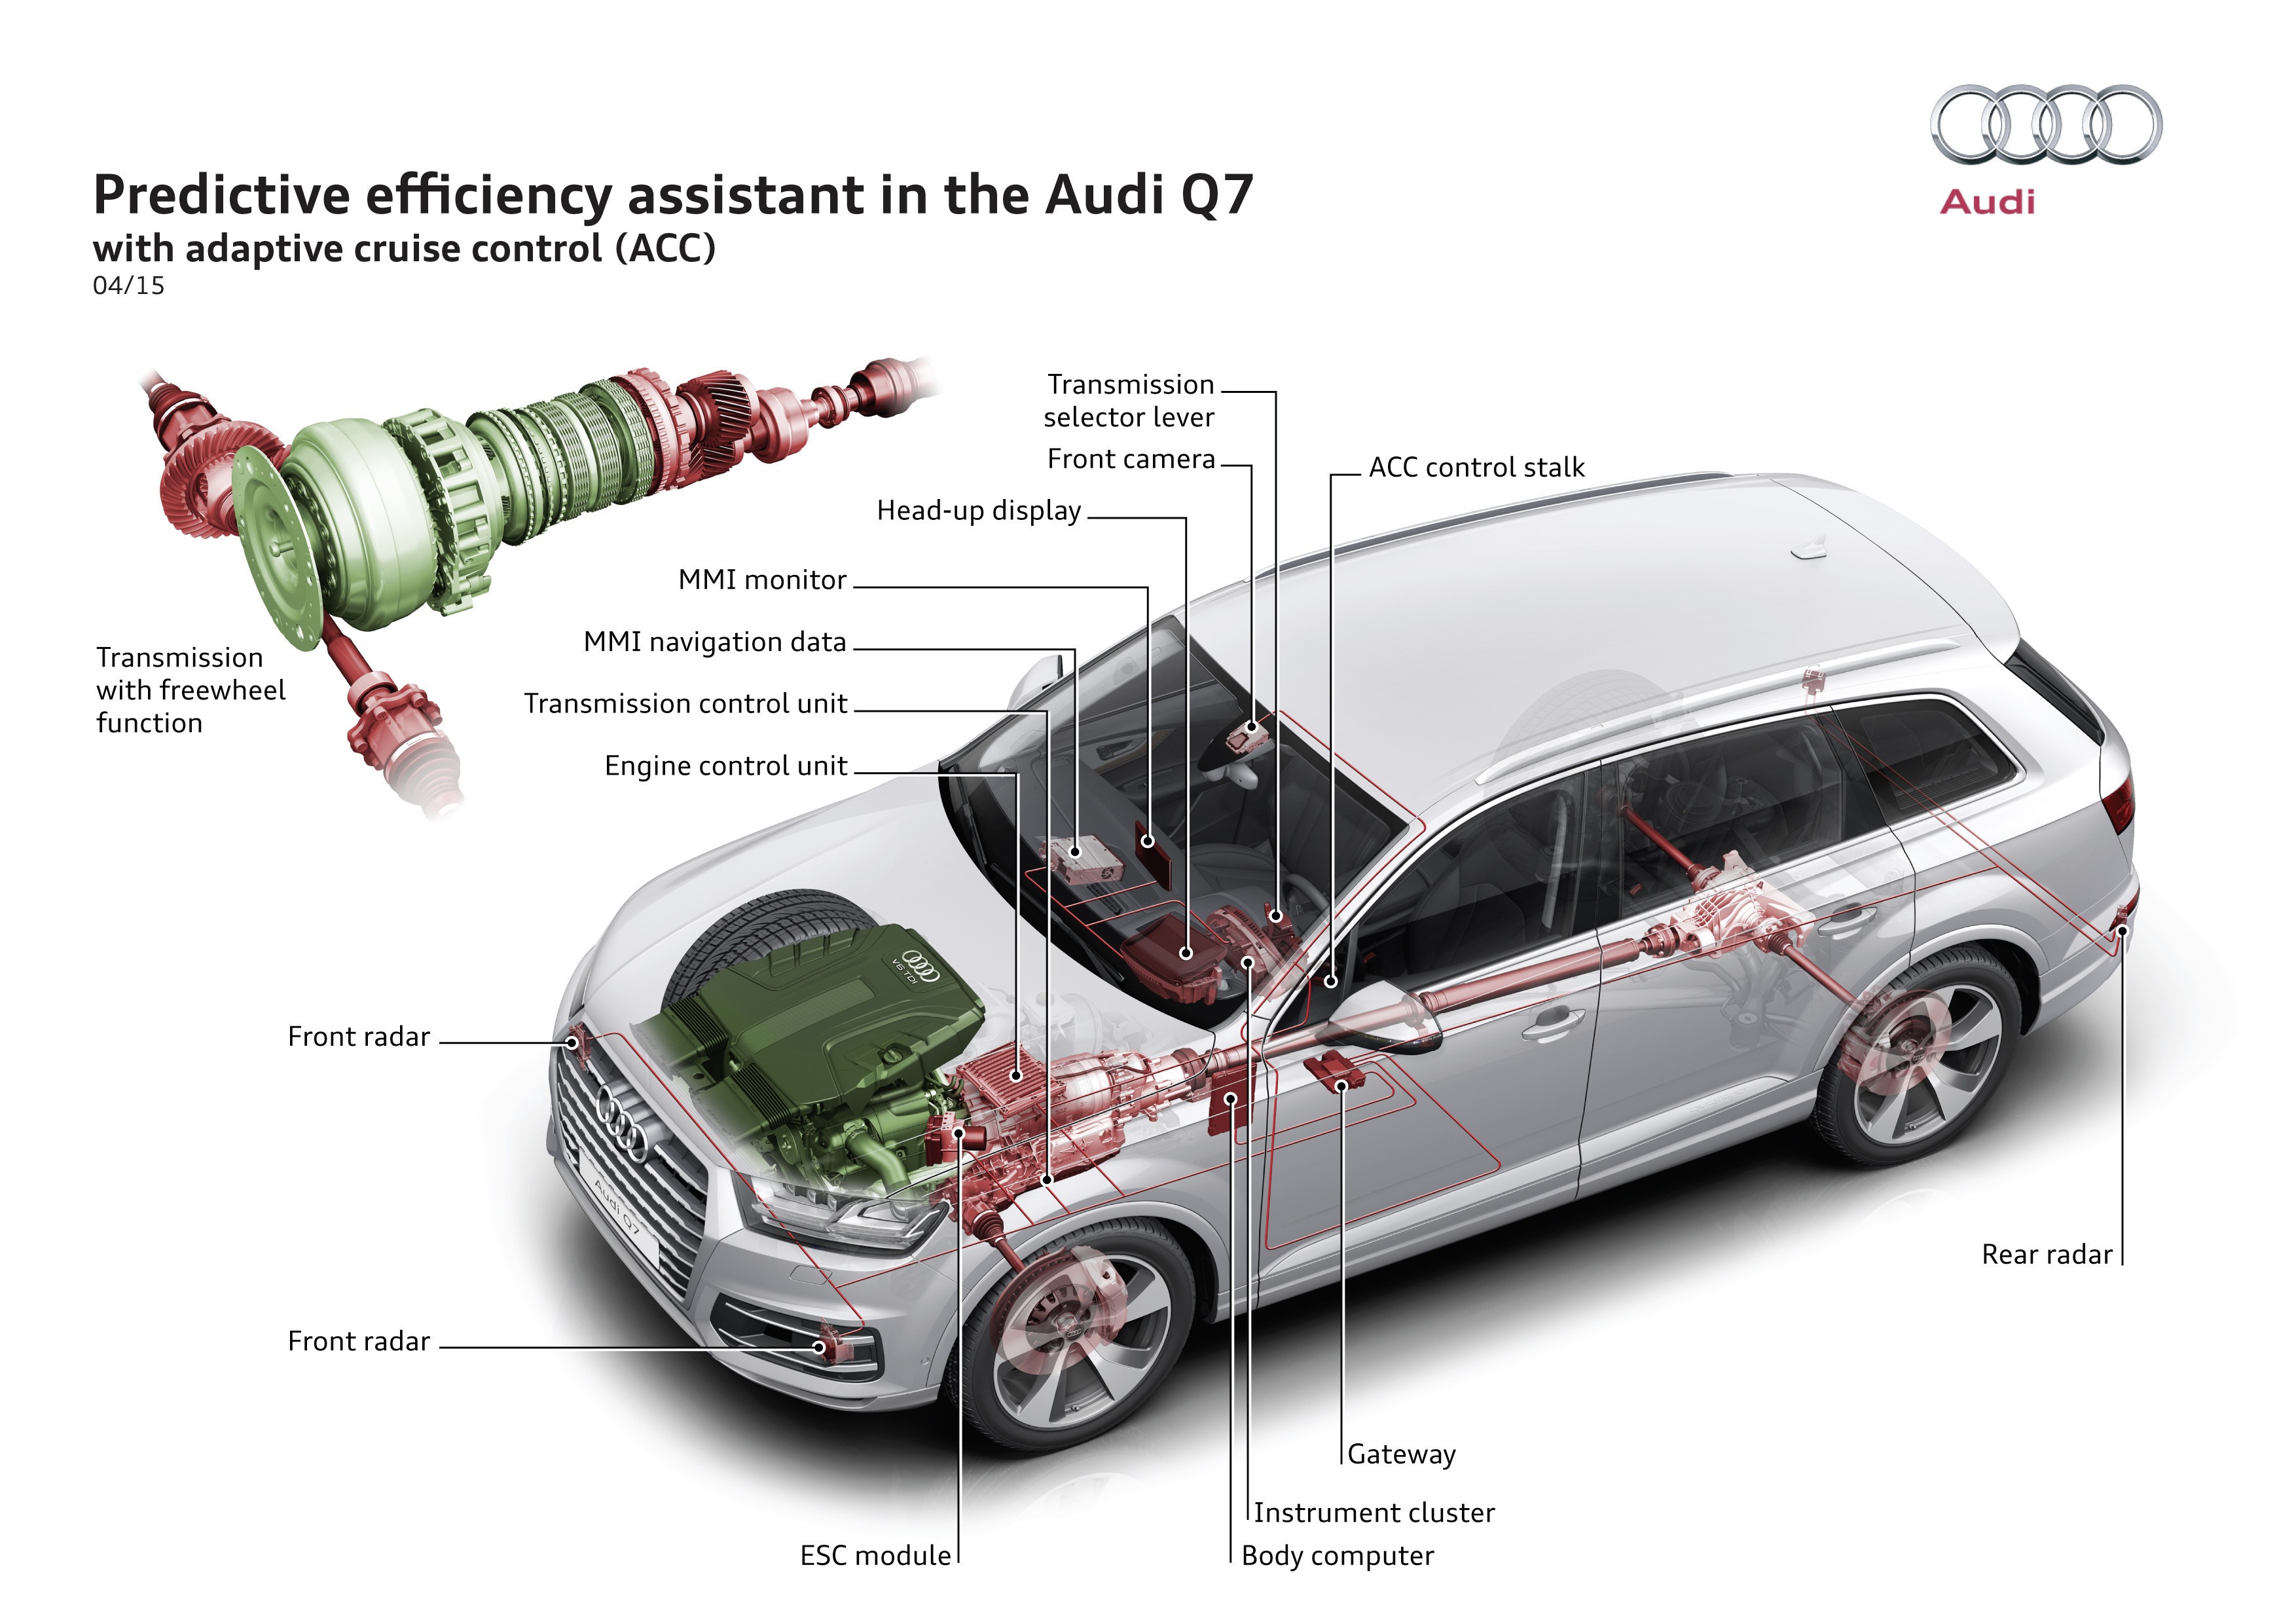 El asistente predictivo de eficiencia de Audi ayuda a reducir el consumo hasta en un diez por ciento